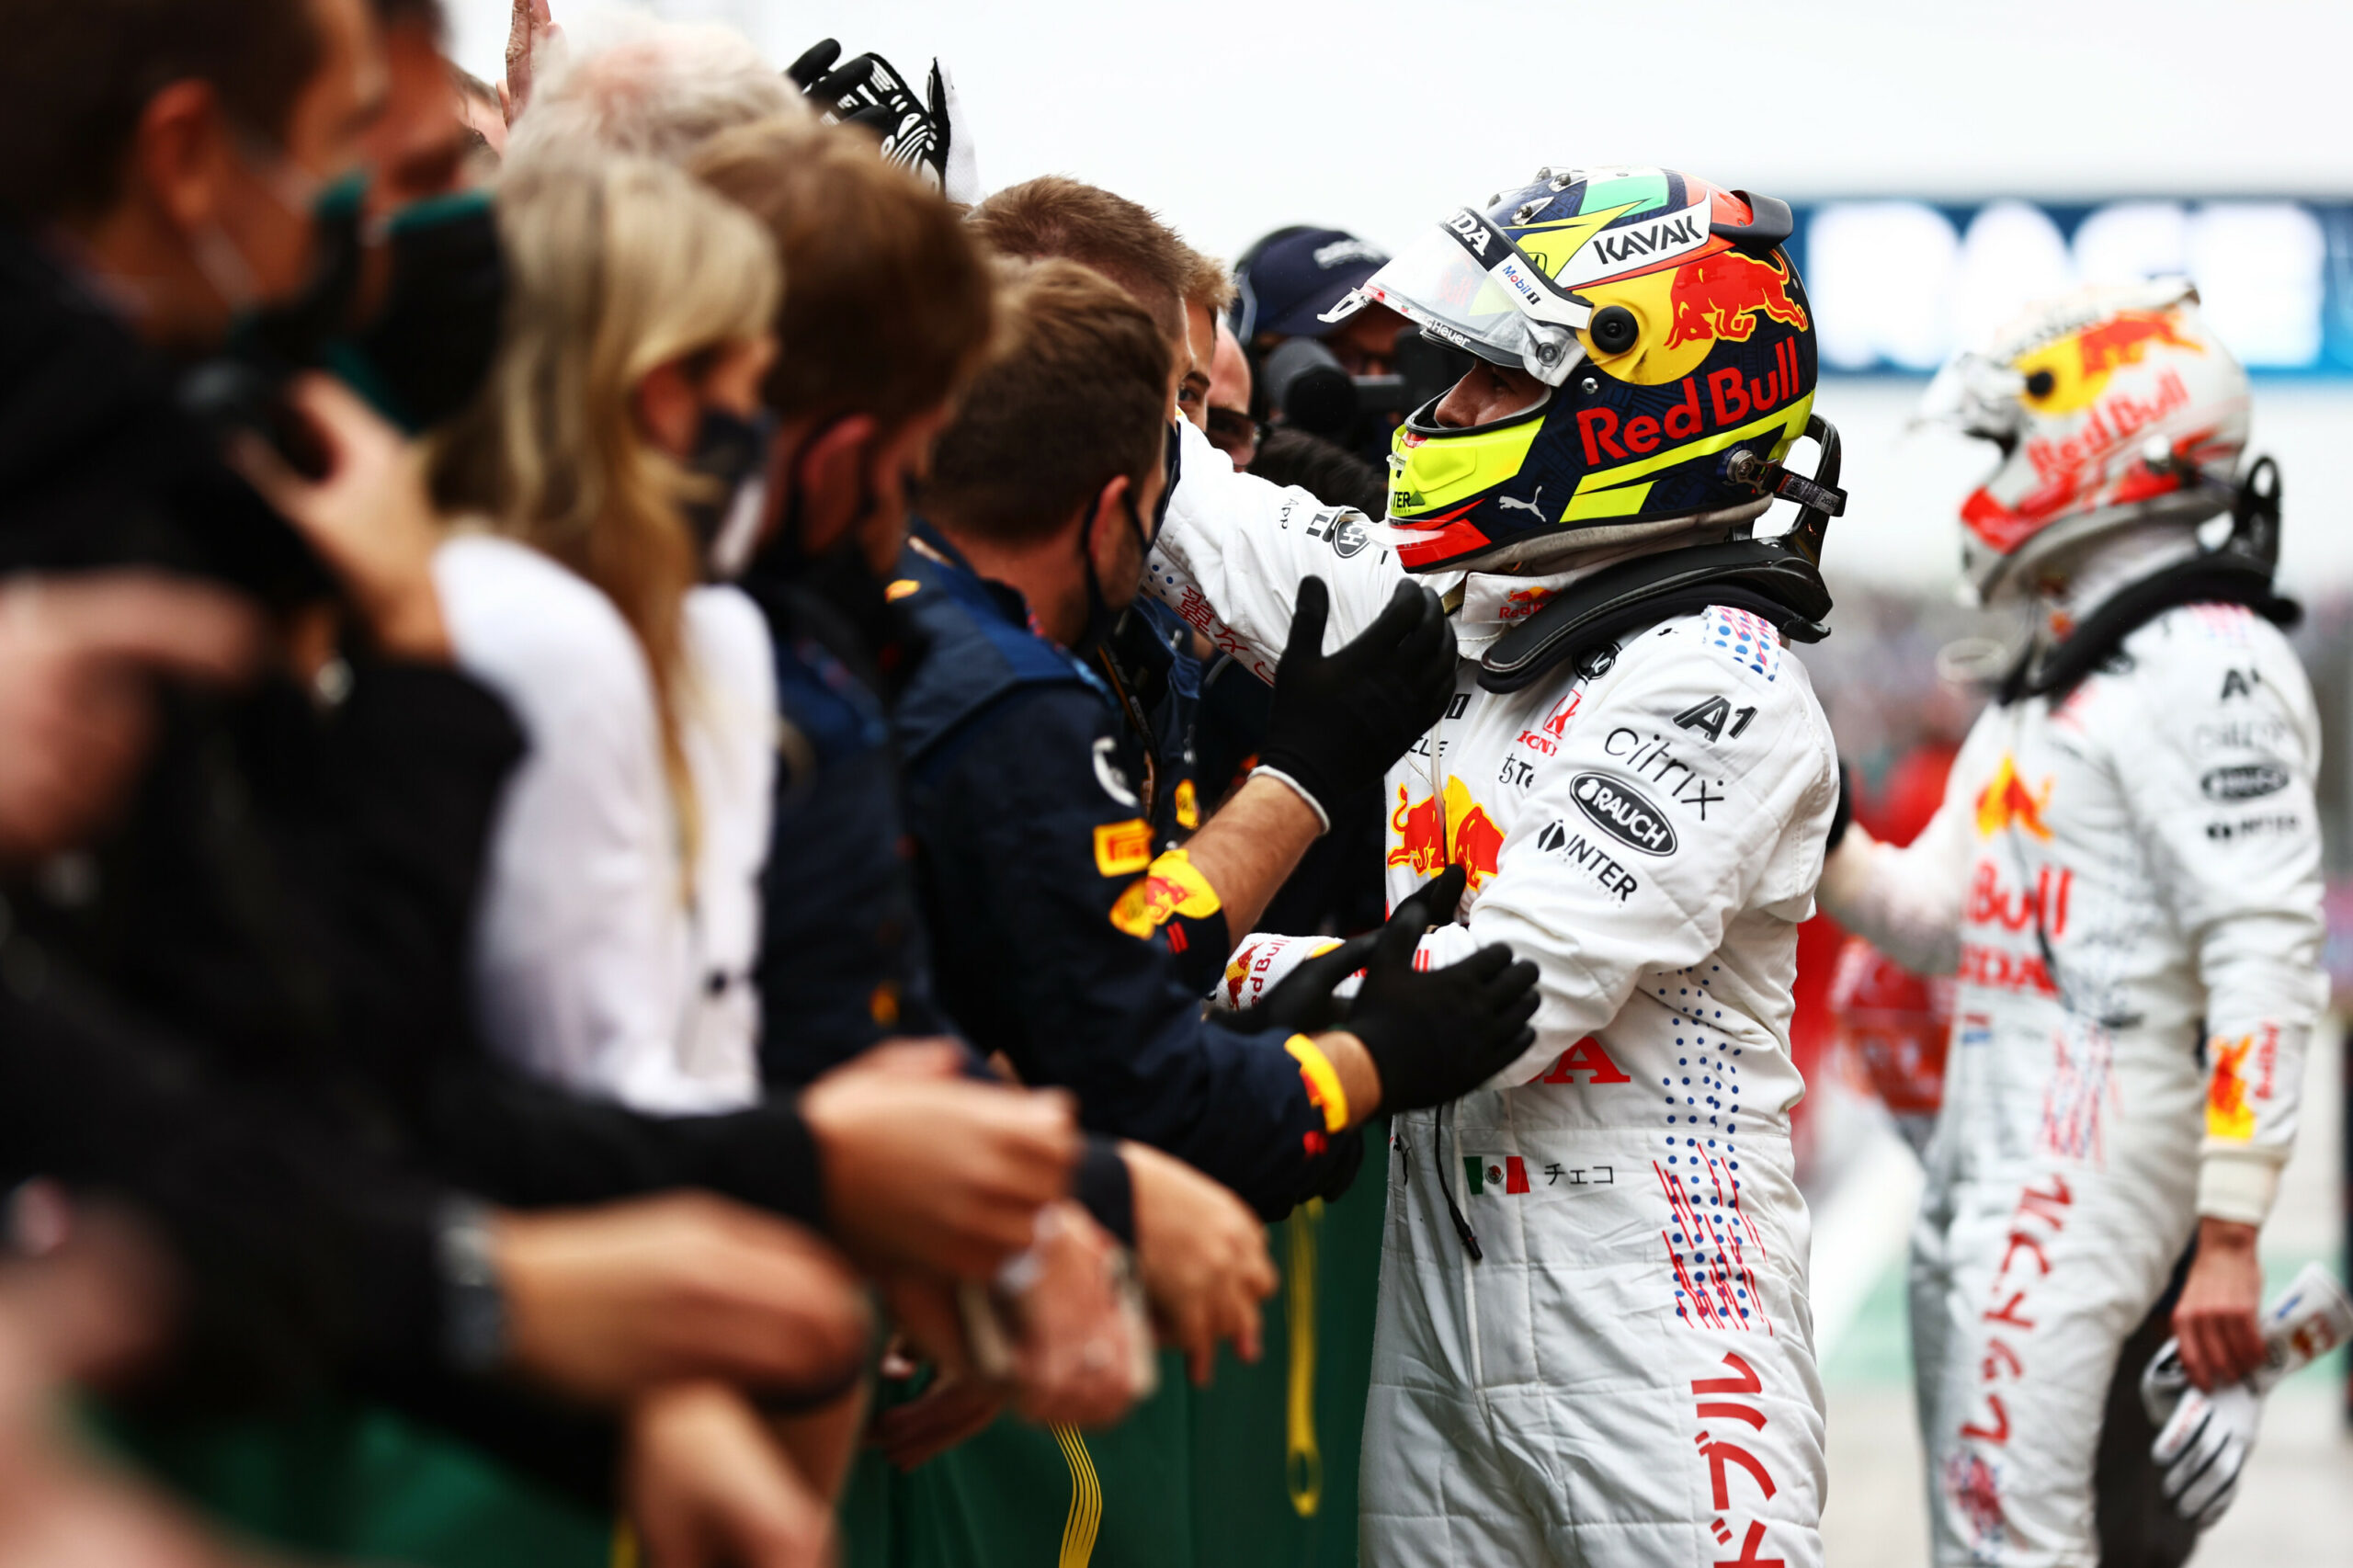 F1 - Objectif atteint pour Perez, qui retrouve le podium en F1